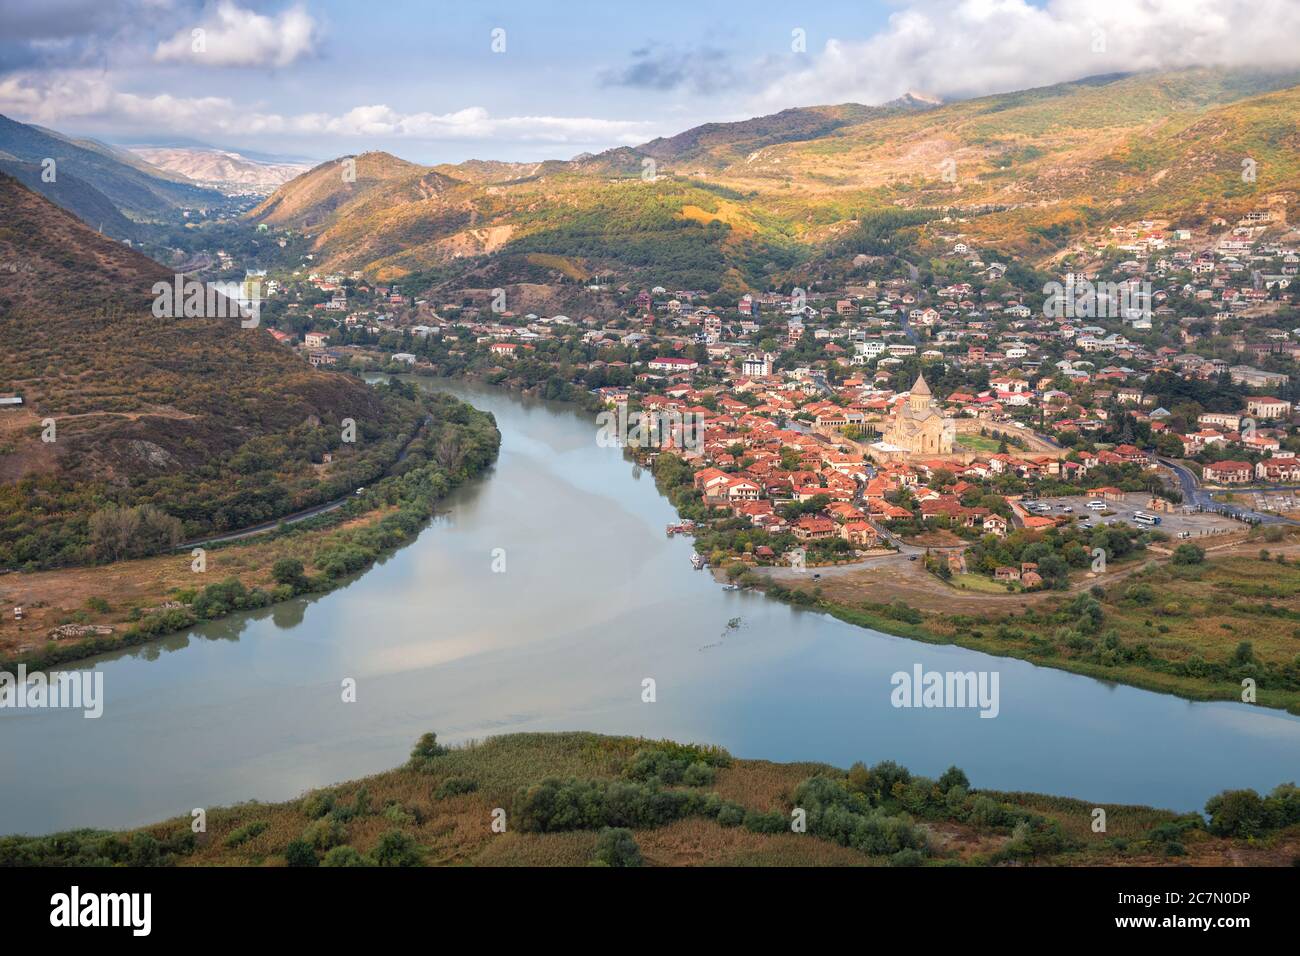 Vue aérienne de l'ancienne ville de Mtskheta près du confluent des rivières Aragvi et Kura. Géorgie Banque D'Images